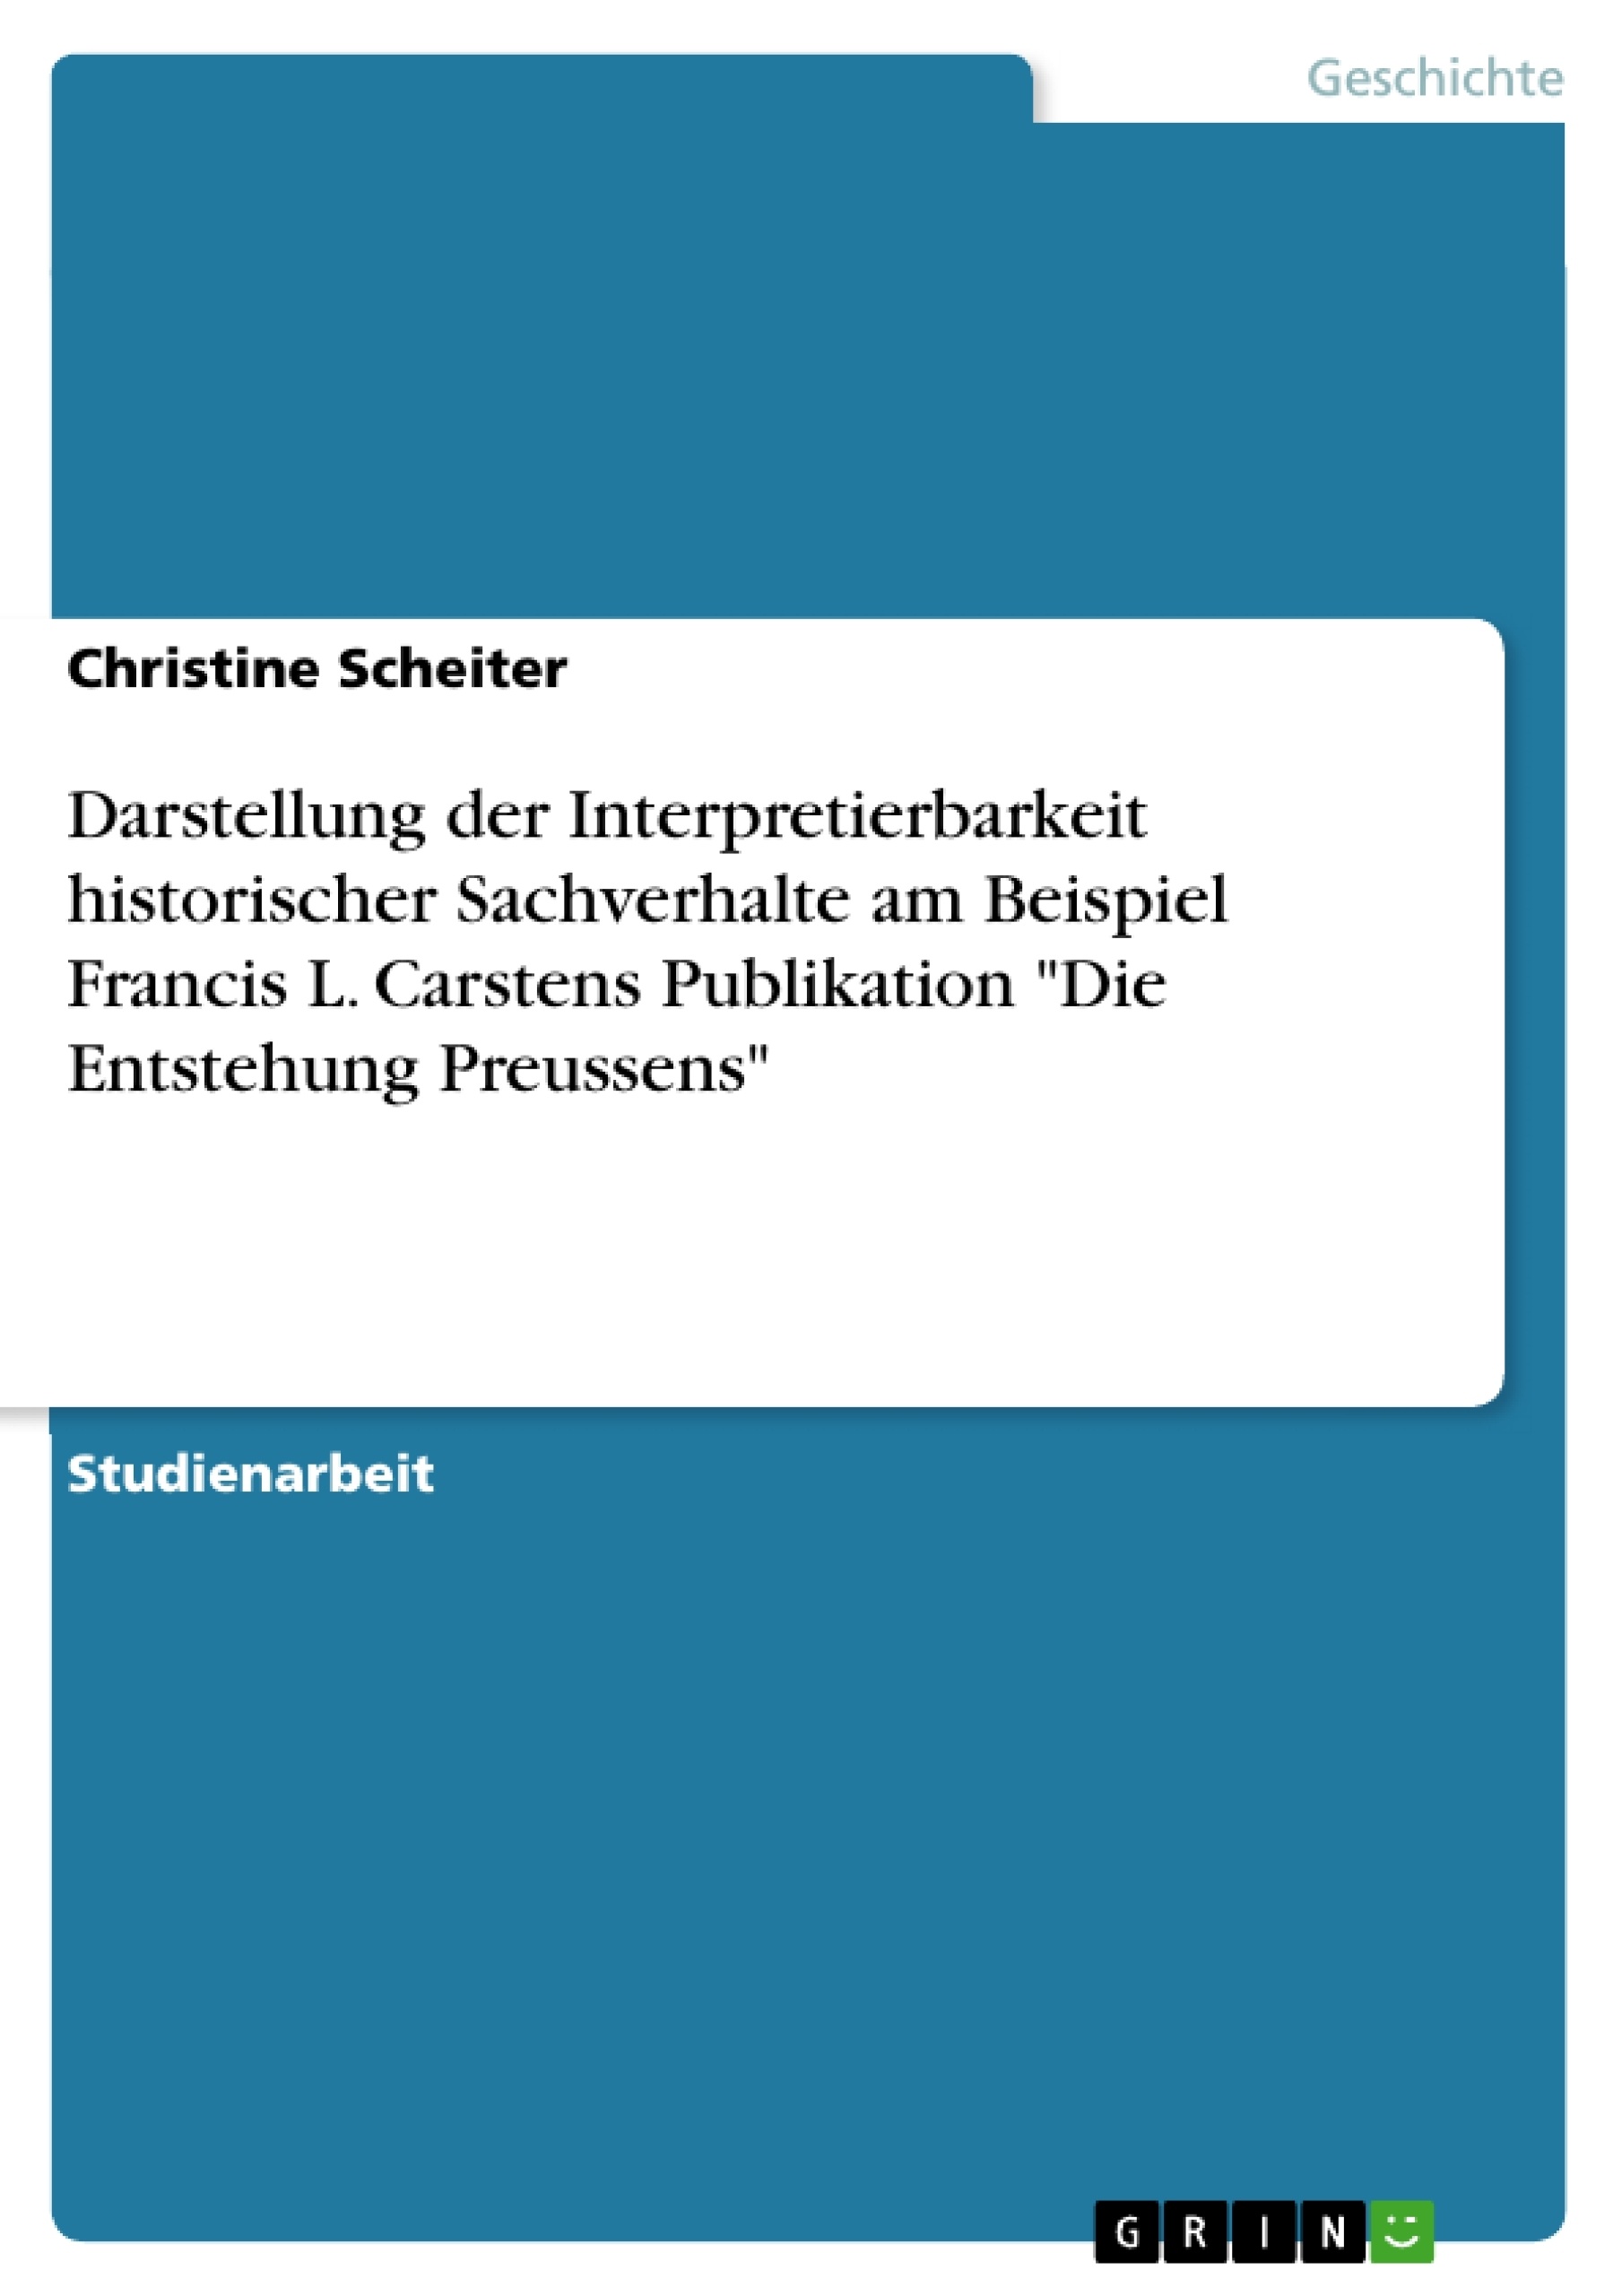 Título: Darstellung der Interpretierbarkeit historischer Sachverhalte am Beispiel Francis L. Carstens Publikation "Die Entstehung Preussens"